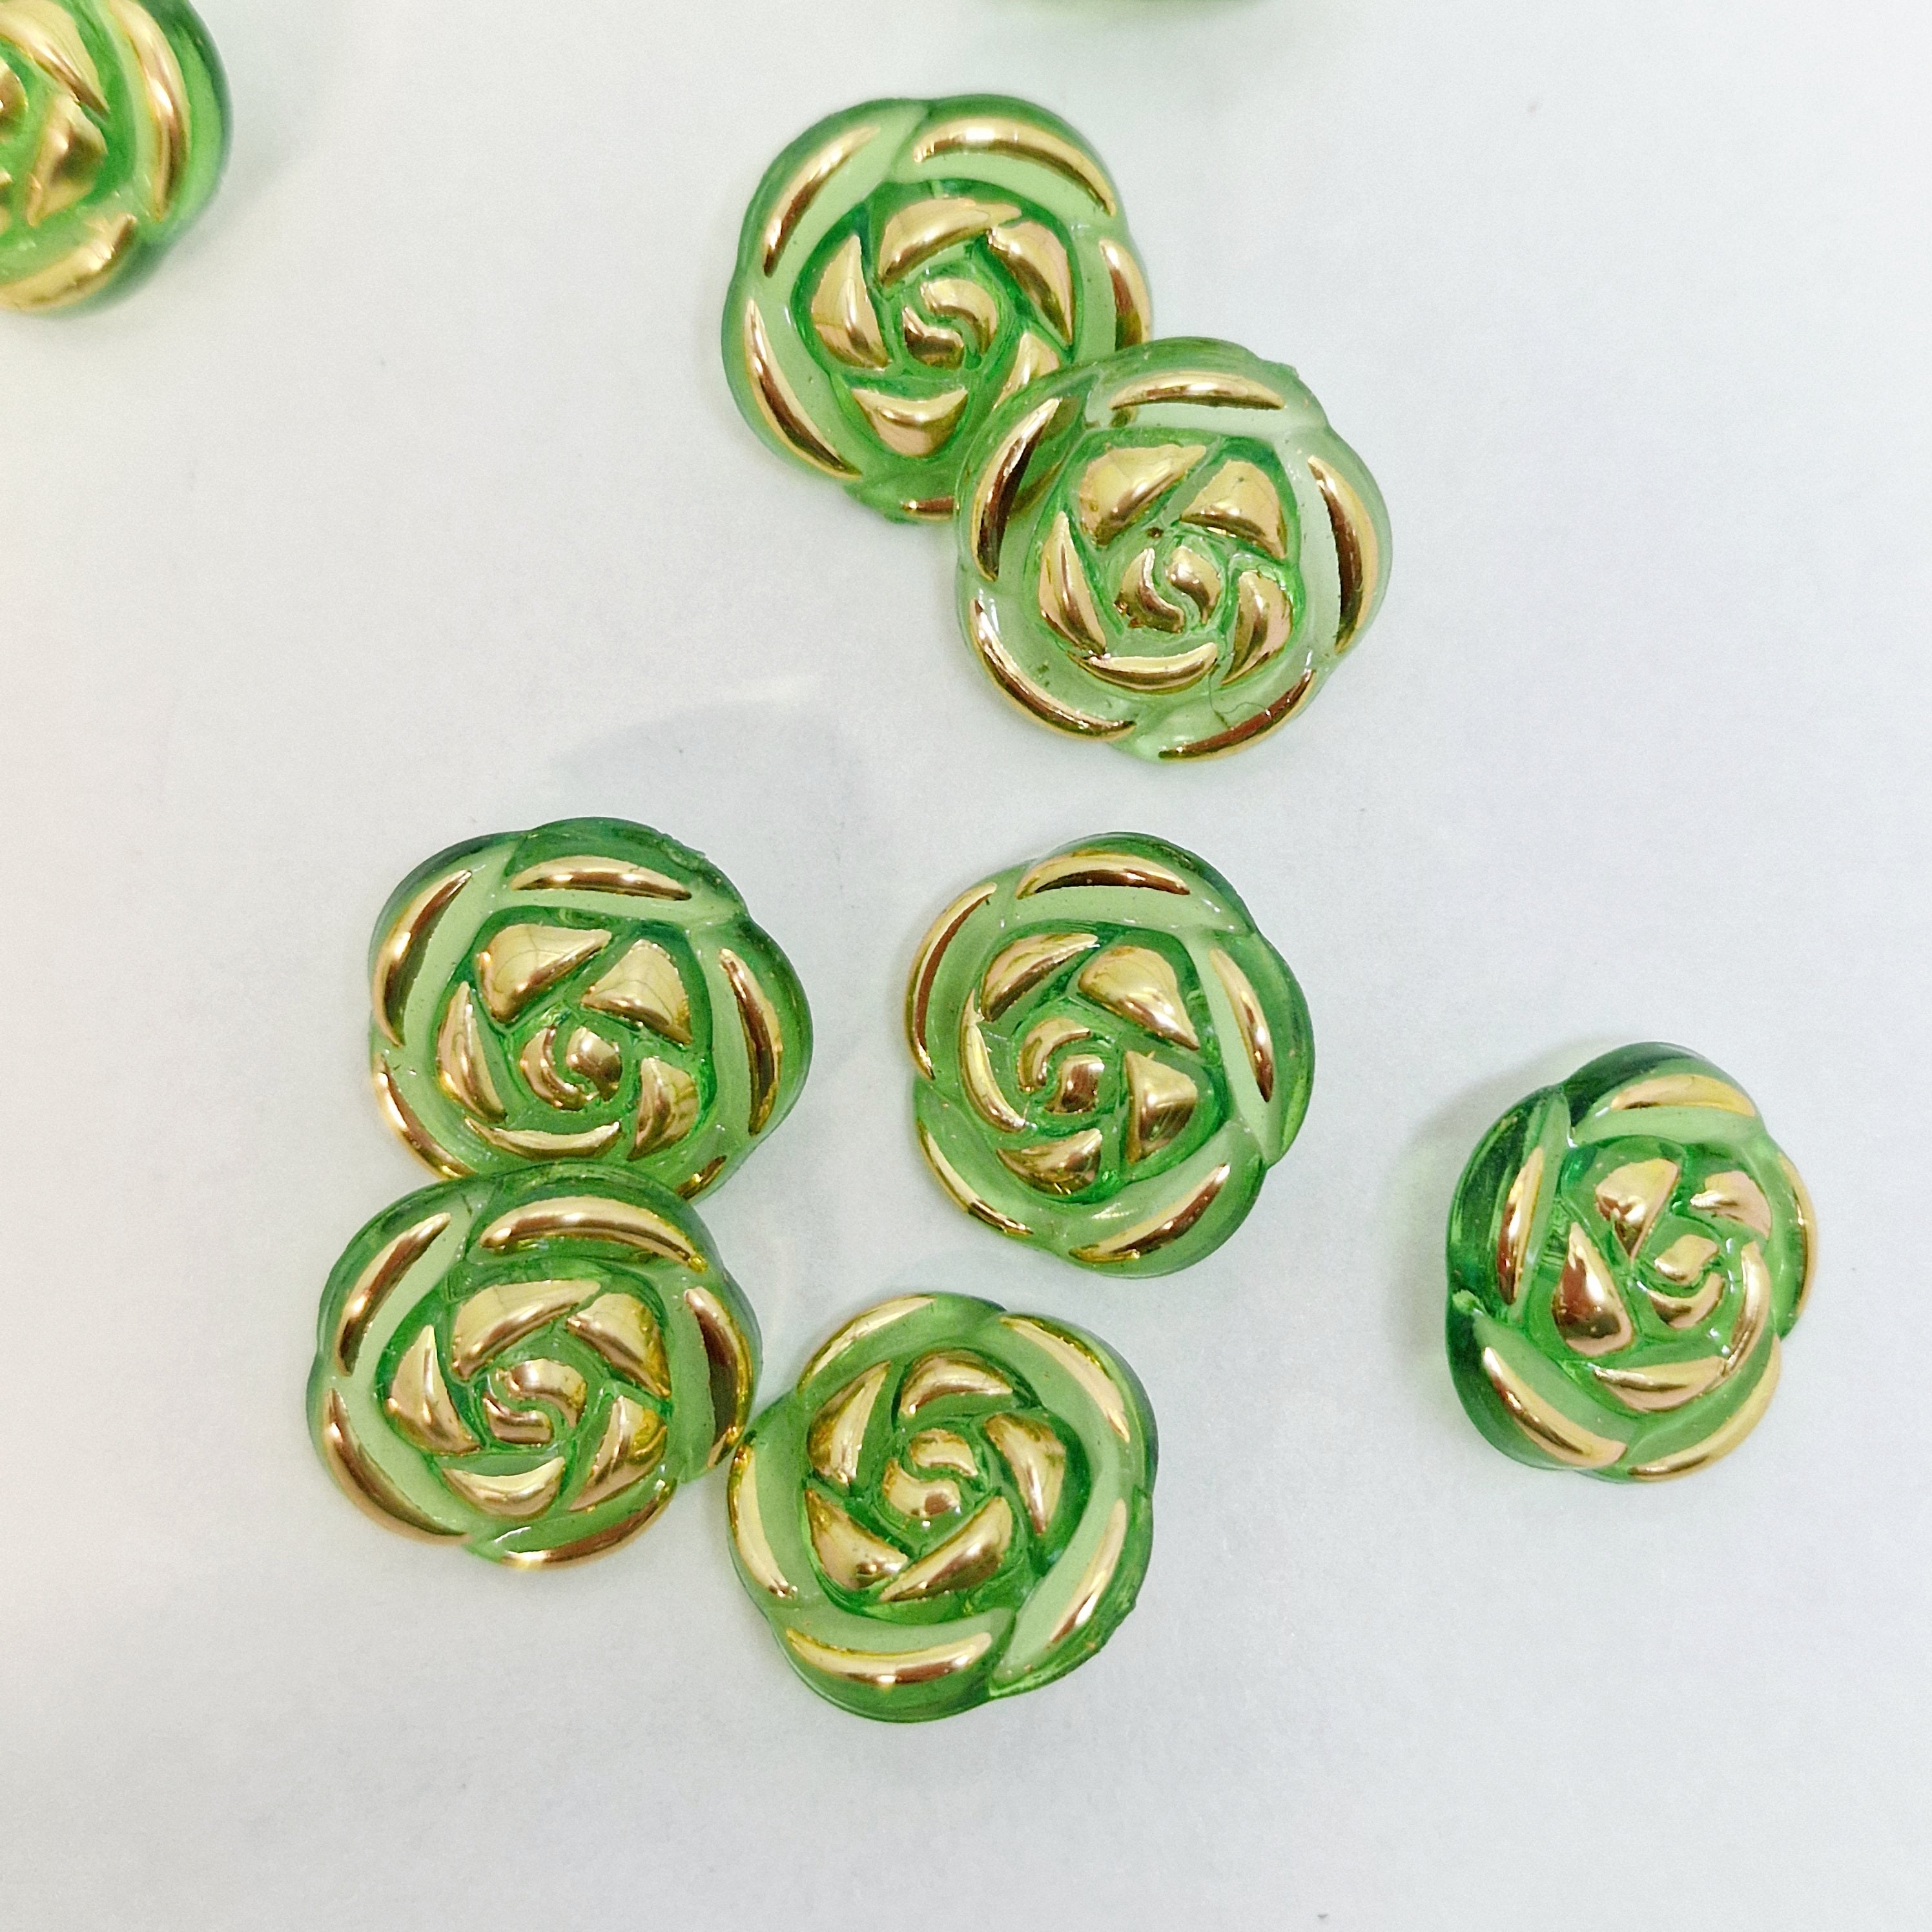 MajorCrafts 40pcs 13mm Green & Gold Rose Flower Shank Resin Buttons